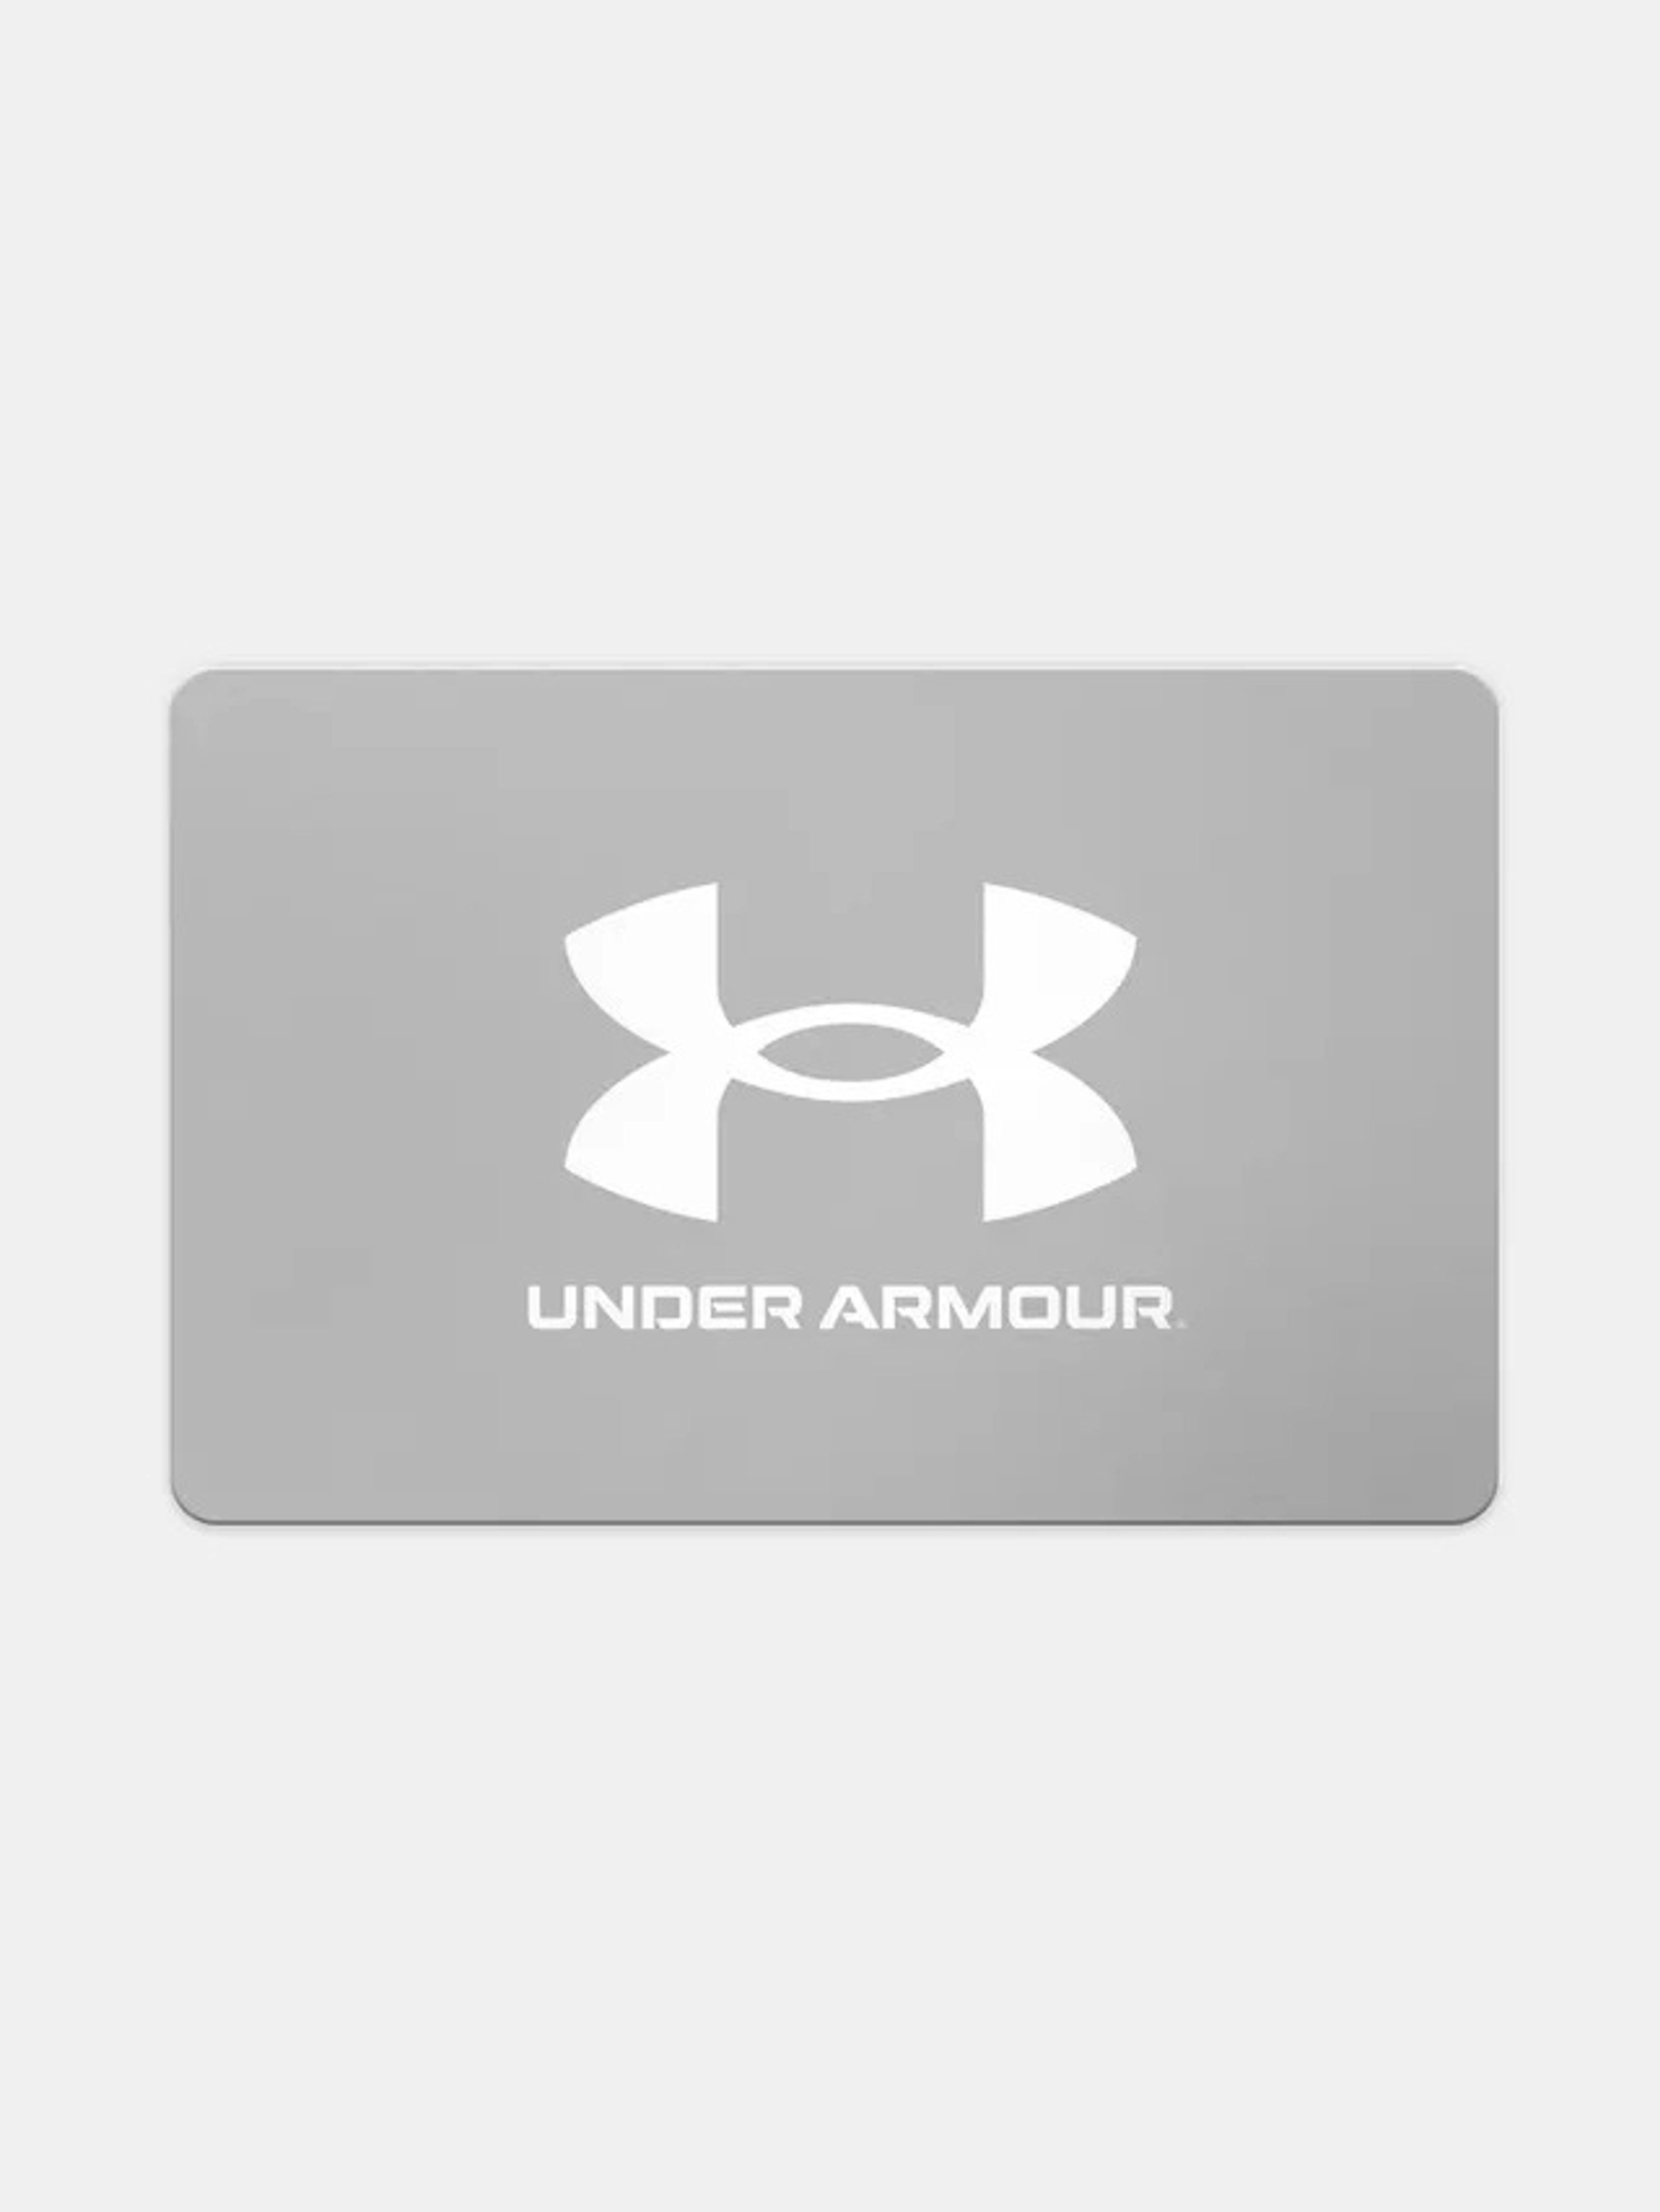 Under Armour 16000 FT ajándékkártya